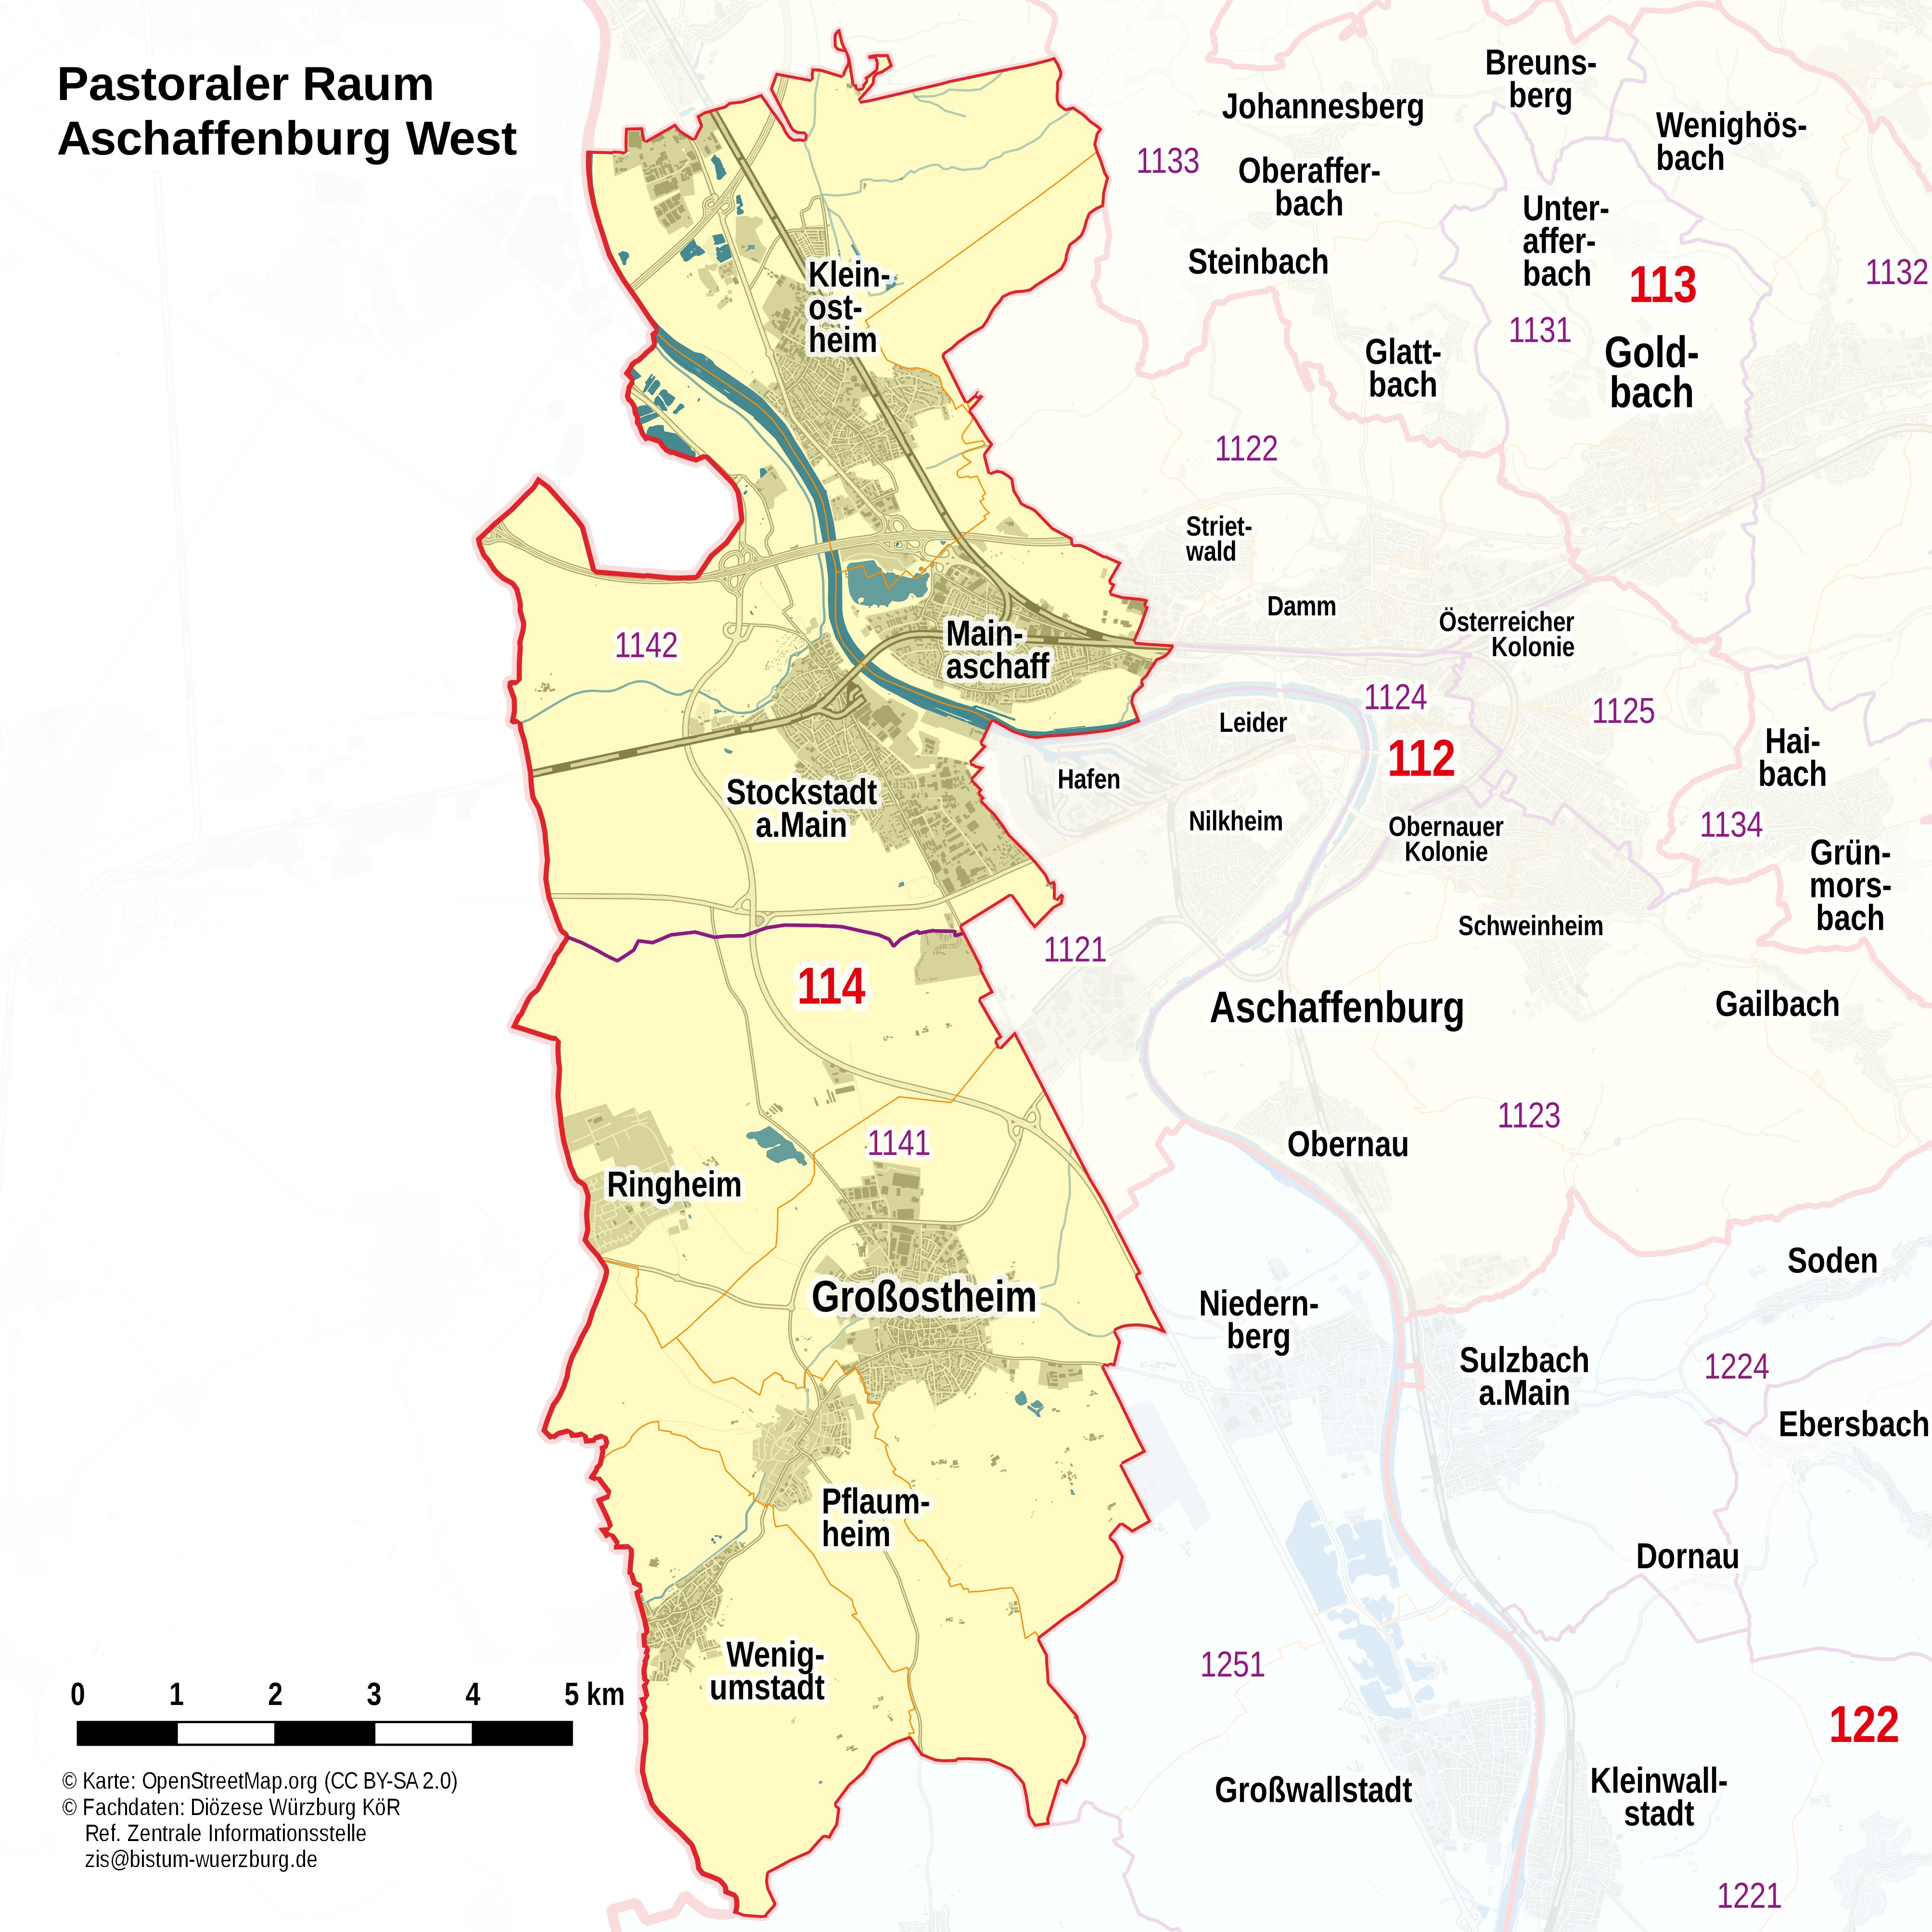 Pastoraler Raum Aschaffenburg West